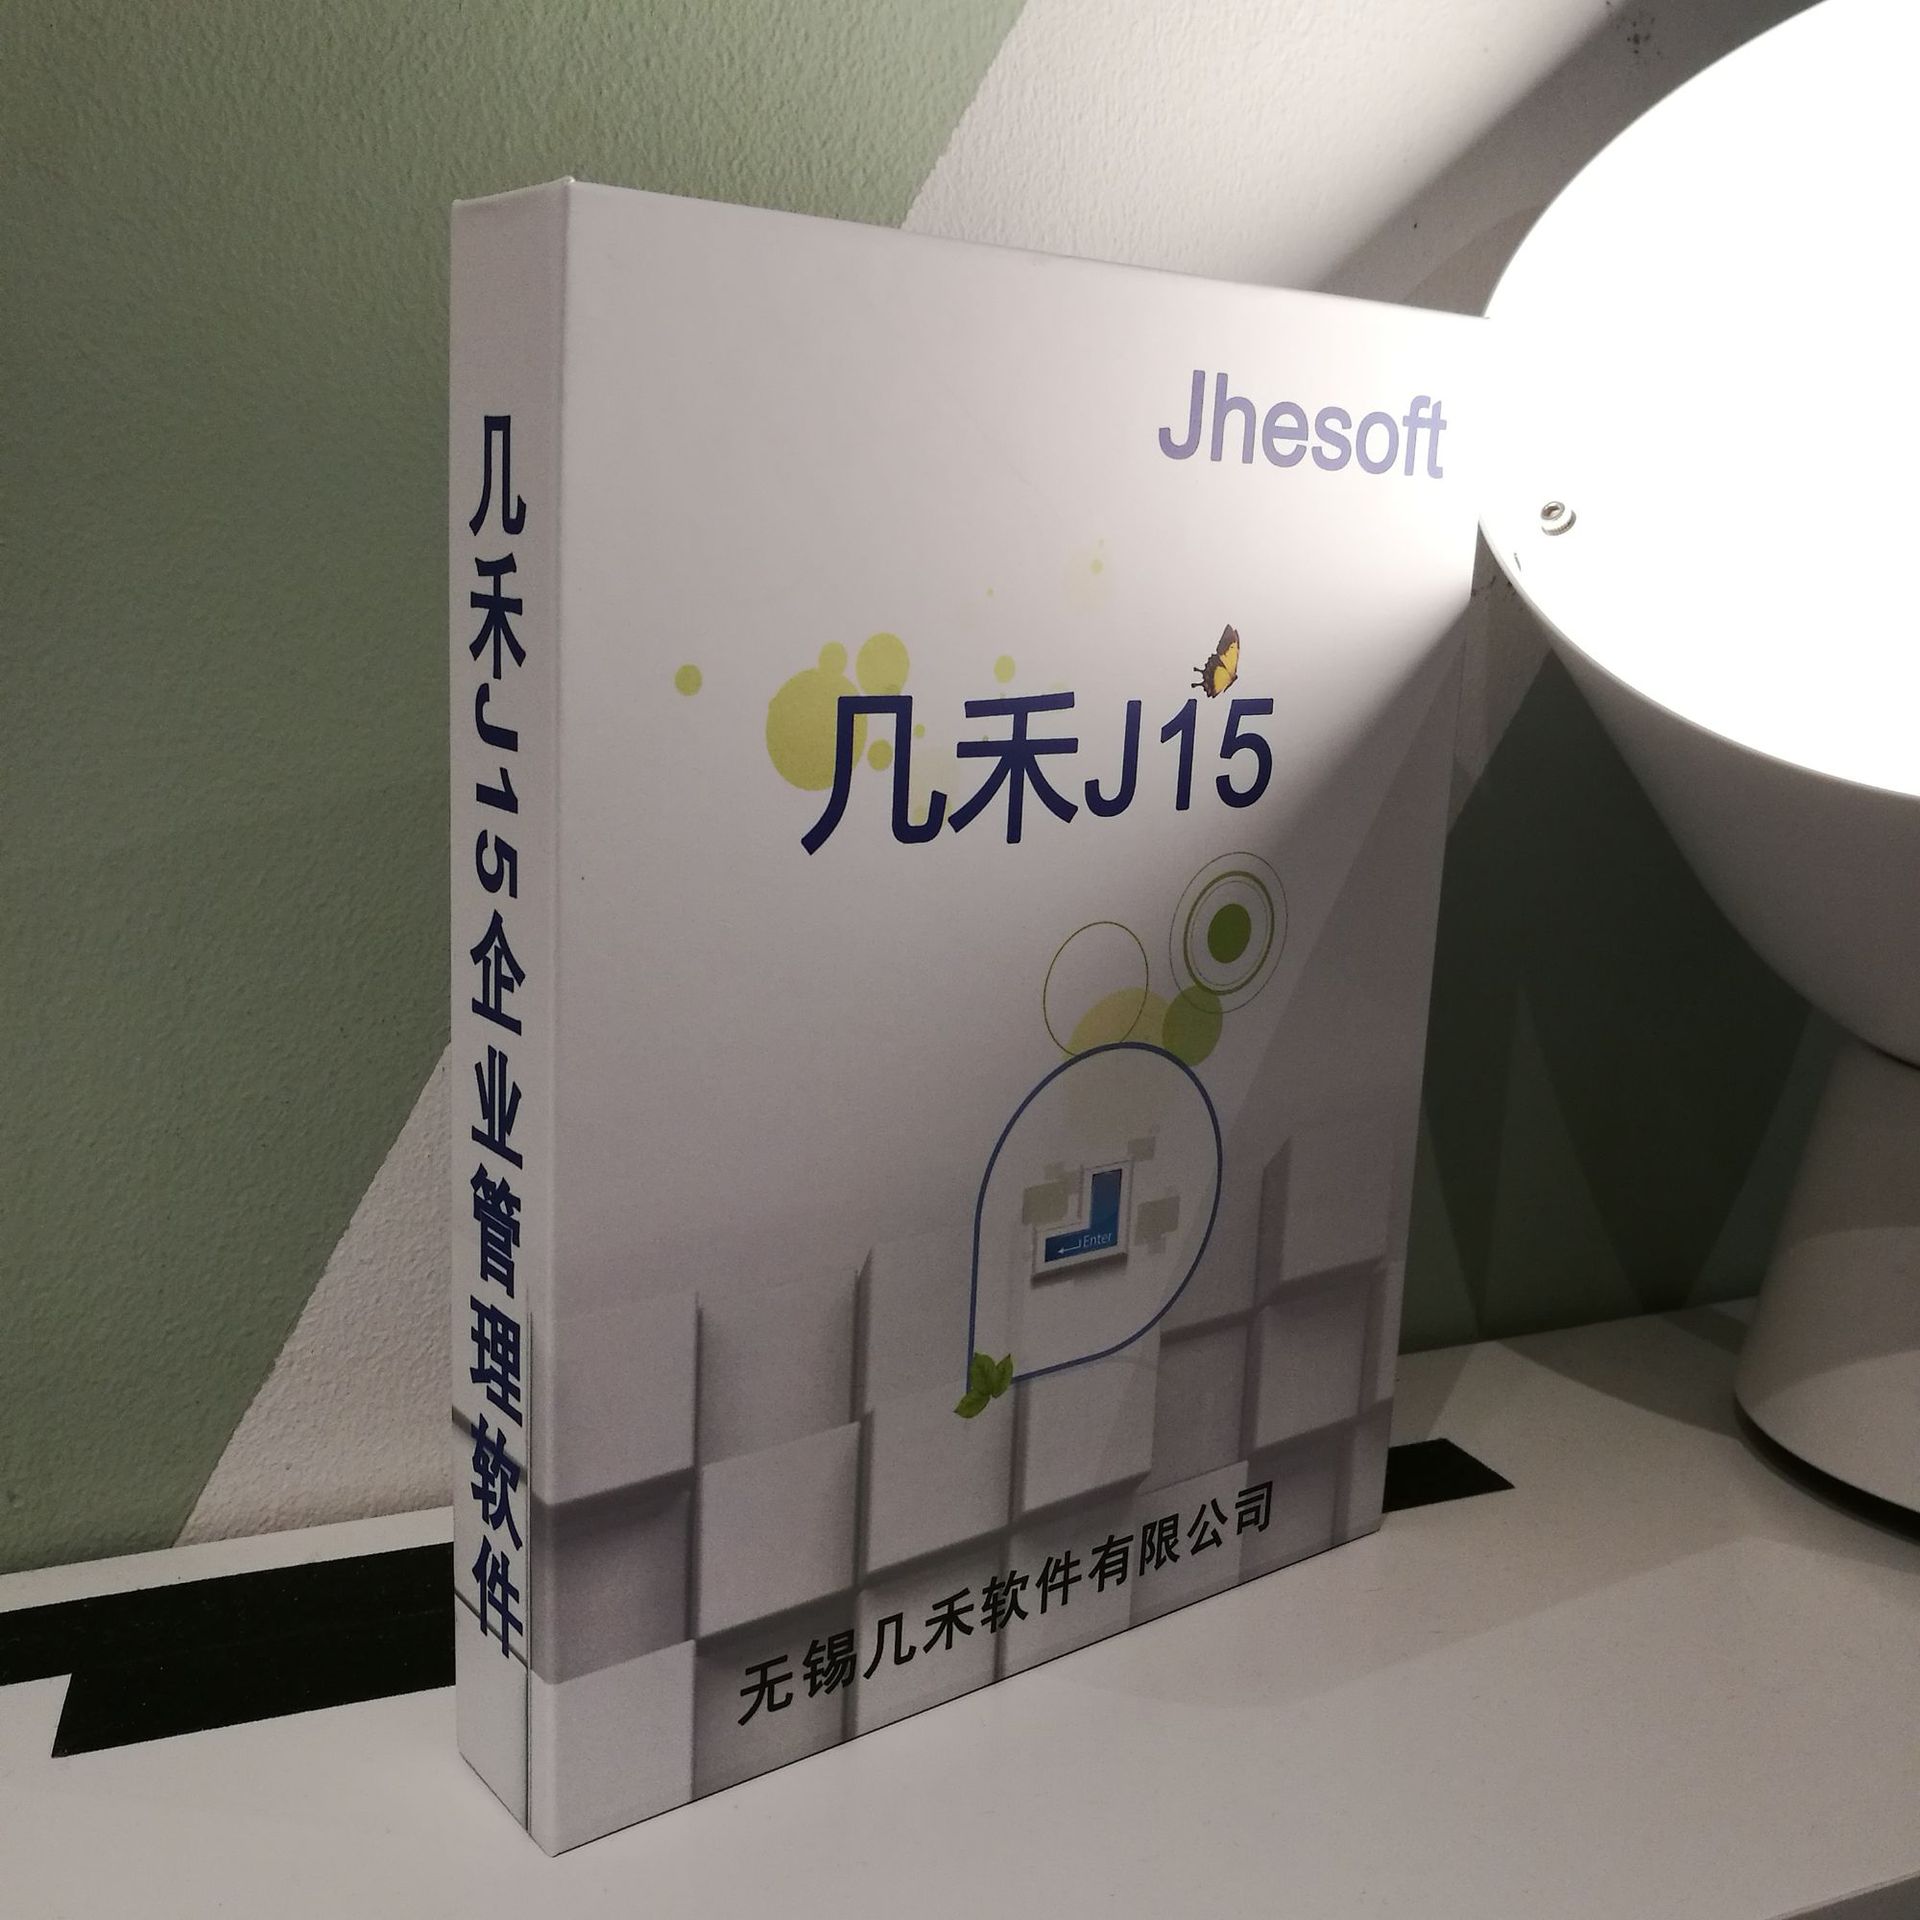 幾禾J15-進銷存管理軟件 進銷存系統 標準版 無錫蘇州上海常州